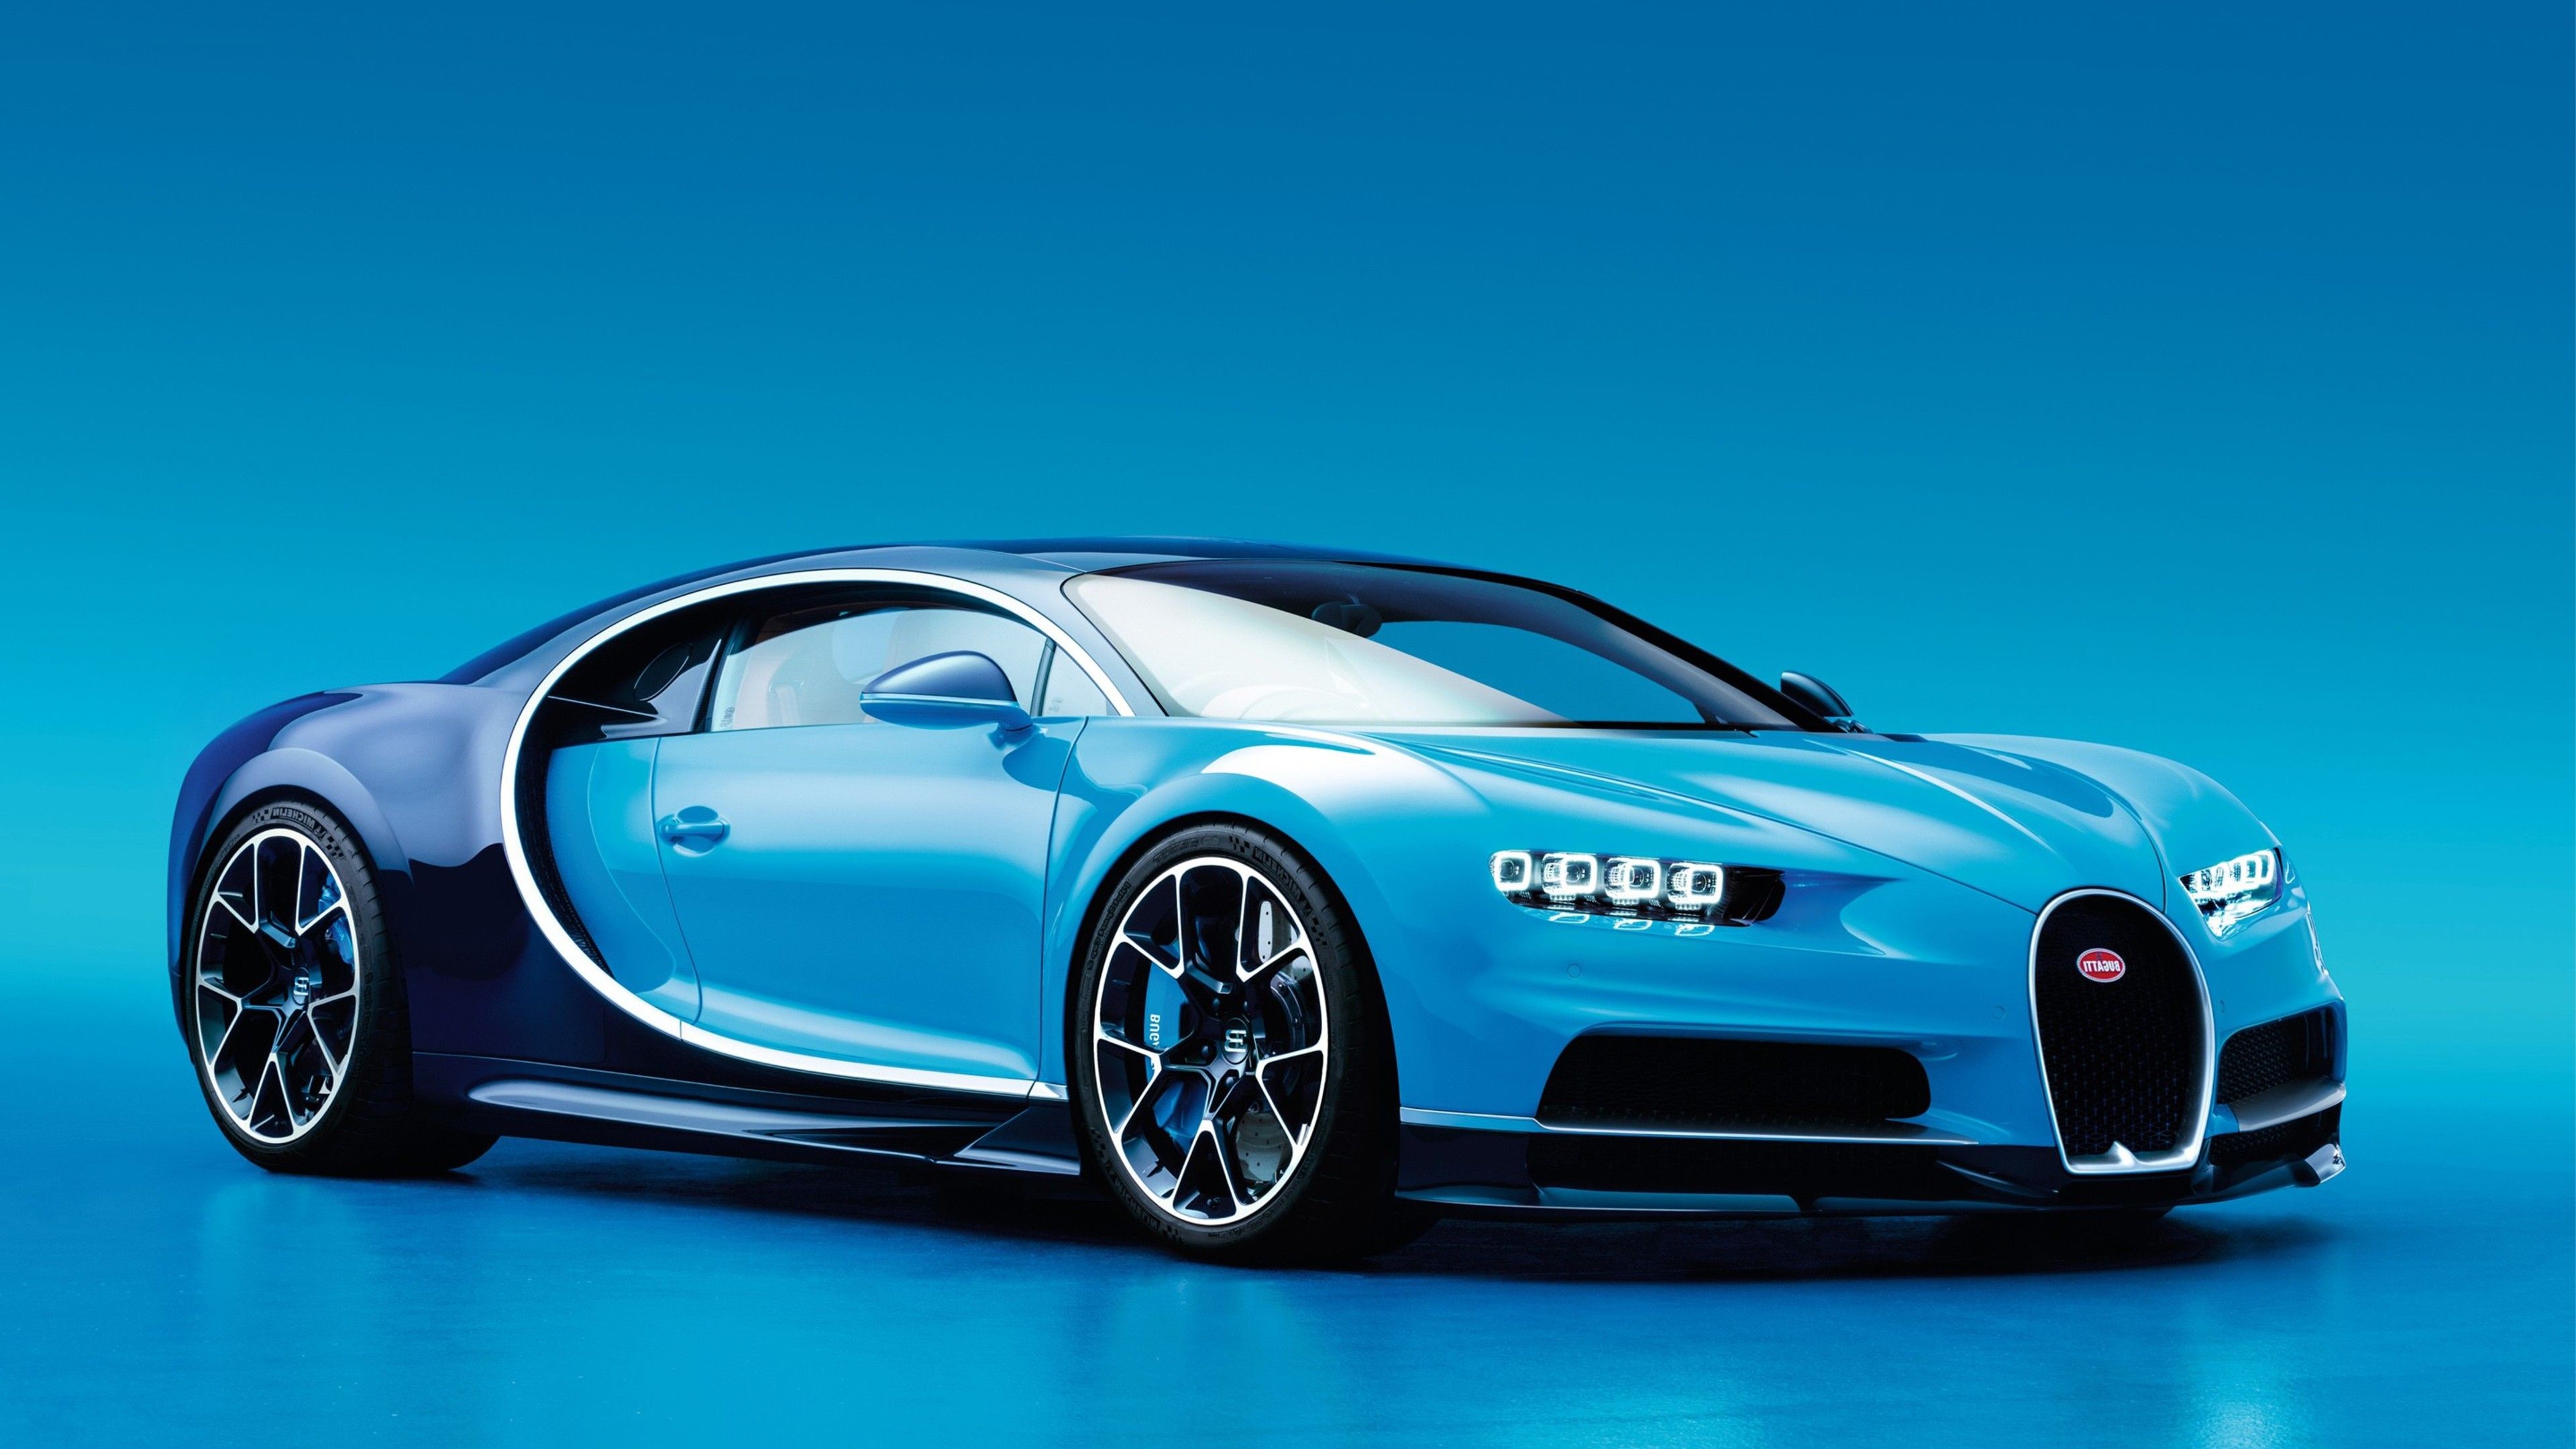 Bugatti Chiron, HD Cars, 4k Wallpaper, Image, Background